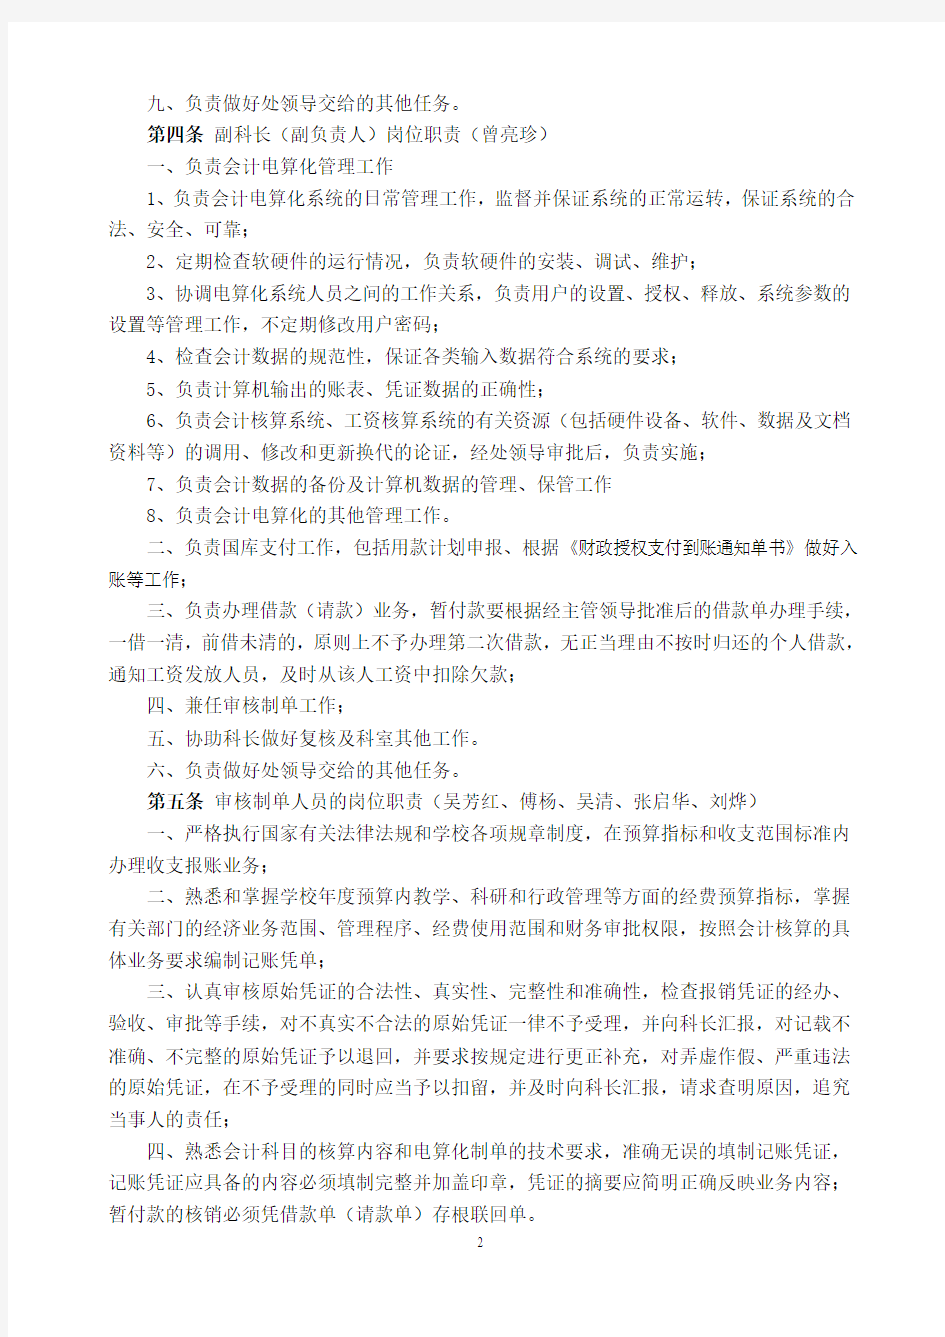 华南农业大学财务处会计核算科岗位责任制